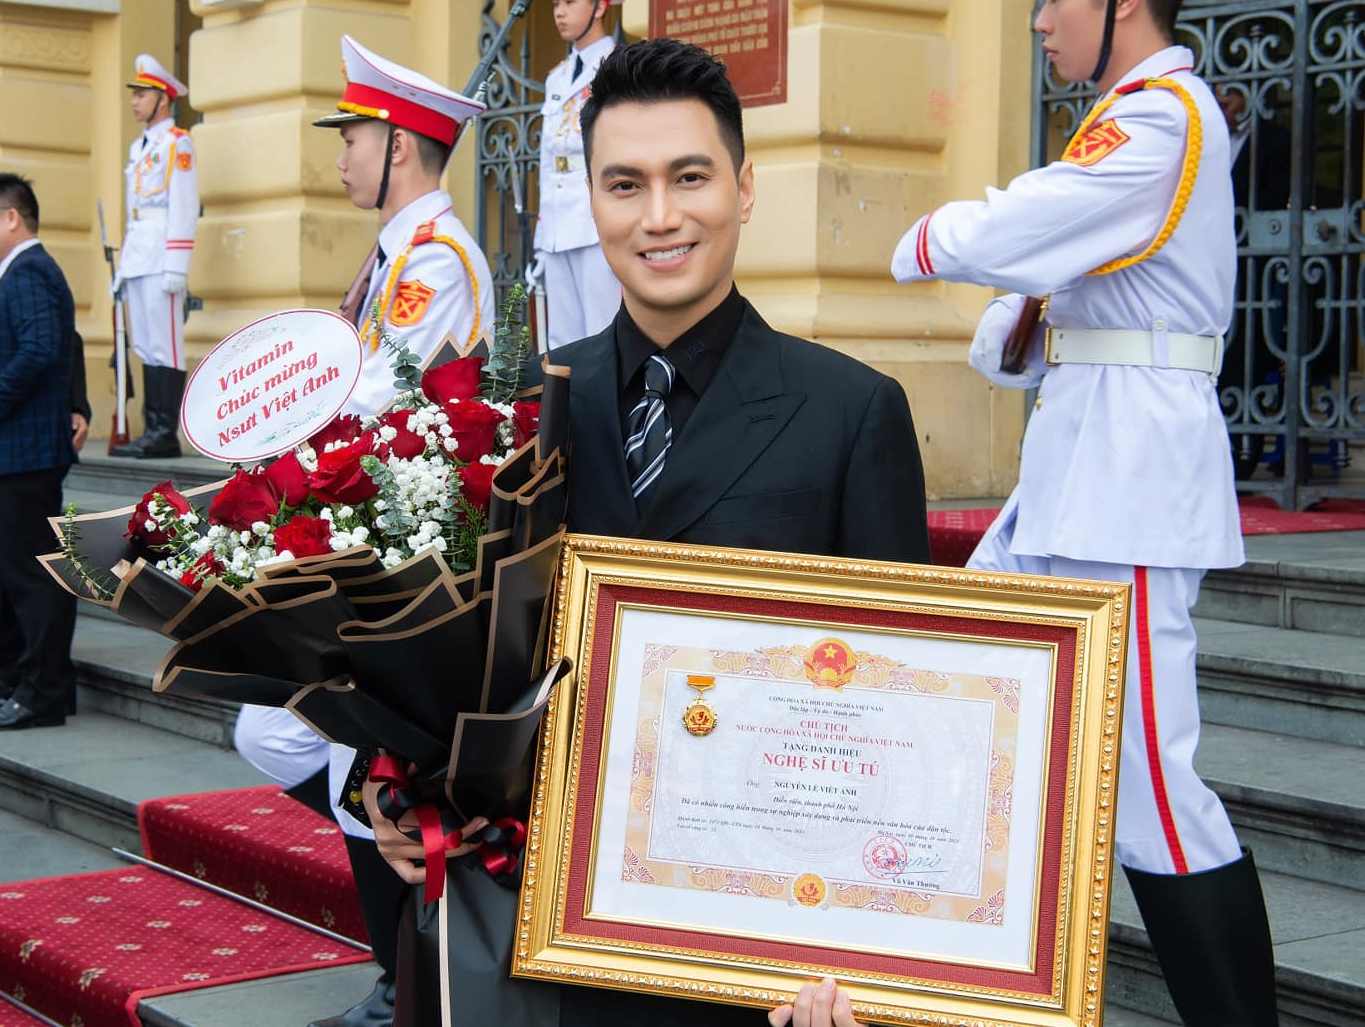 Diễn viên Việt Anh trong ngày đón nhận danh hiệu Nghệ sĩ ưu tú. Ảnh: Facebook nhân vật.